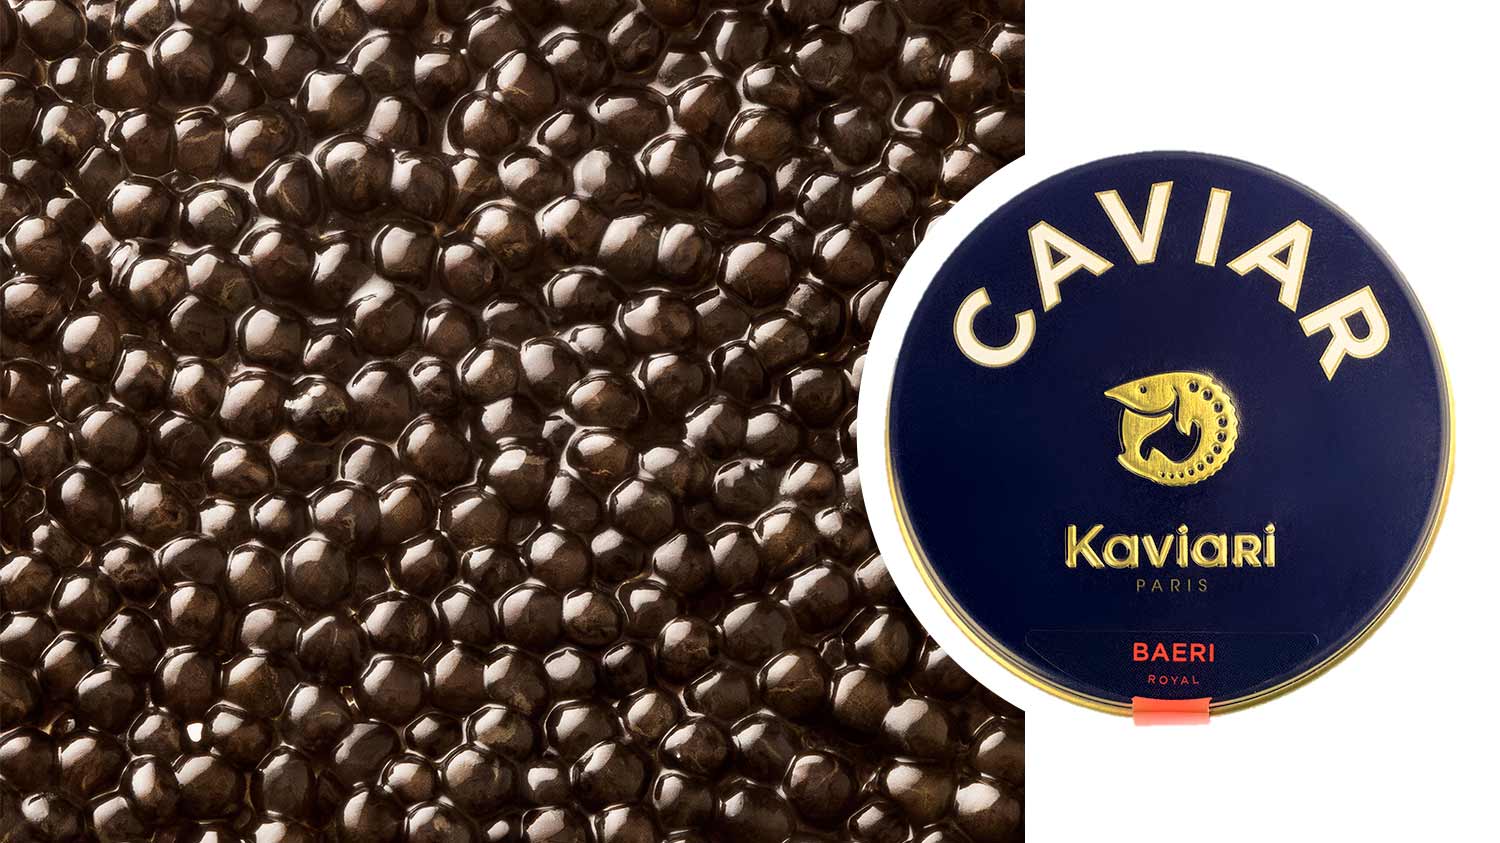 Kaviari_Baeri_Royal_French_Caviar_Dubai_WISK_UAE.jpg